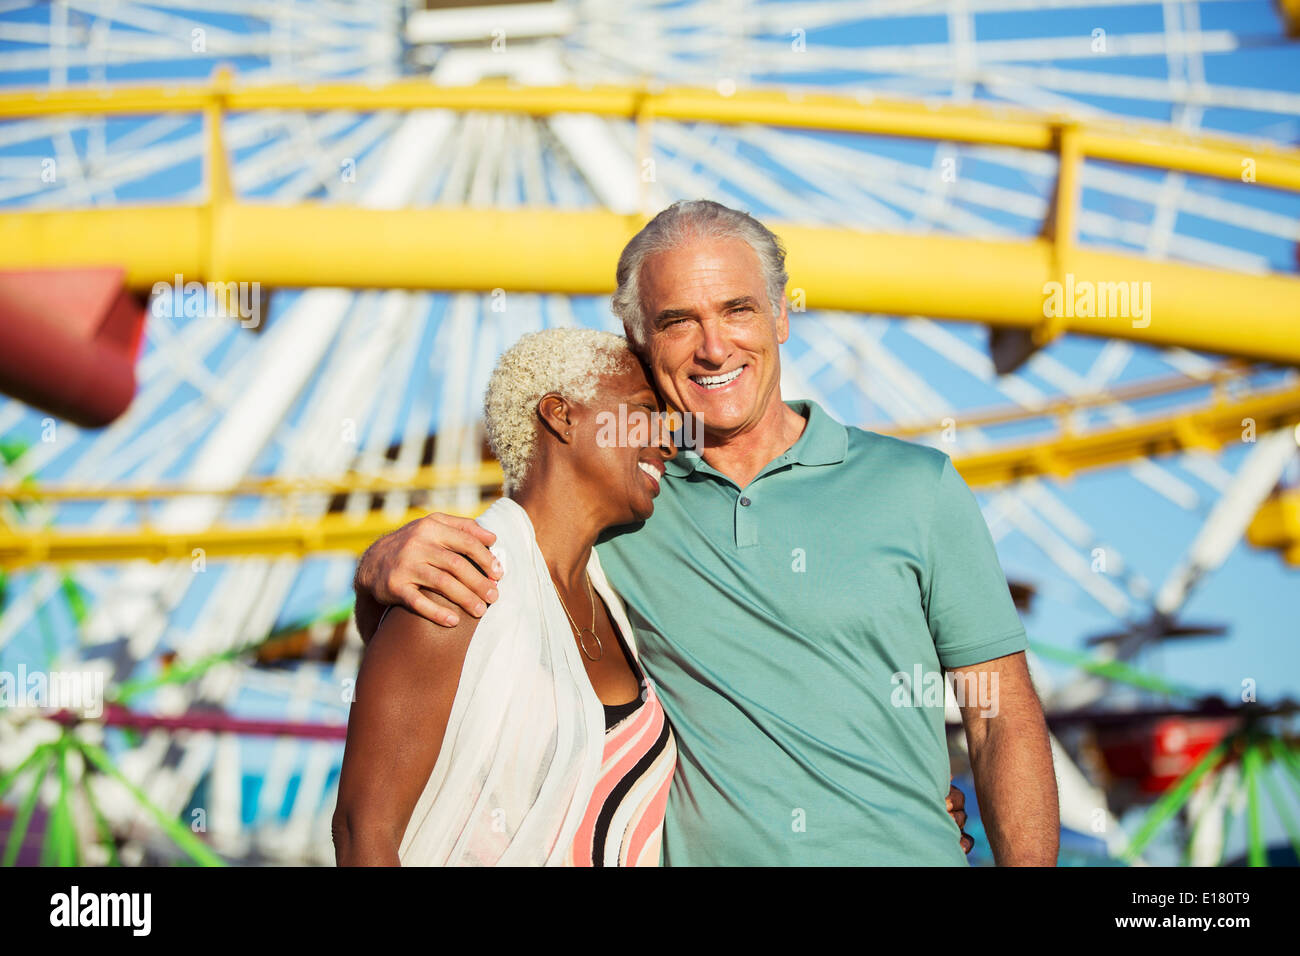 Portrait de senior couple hugging at amusement park Banque D'Images